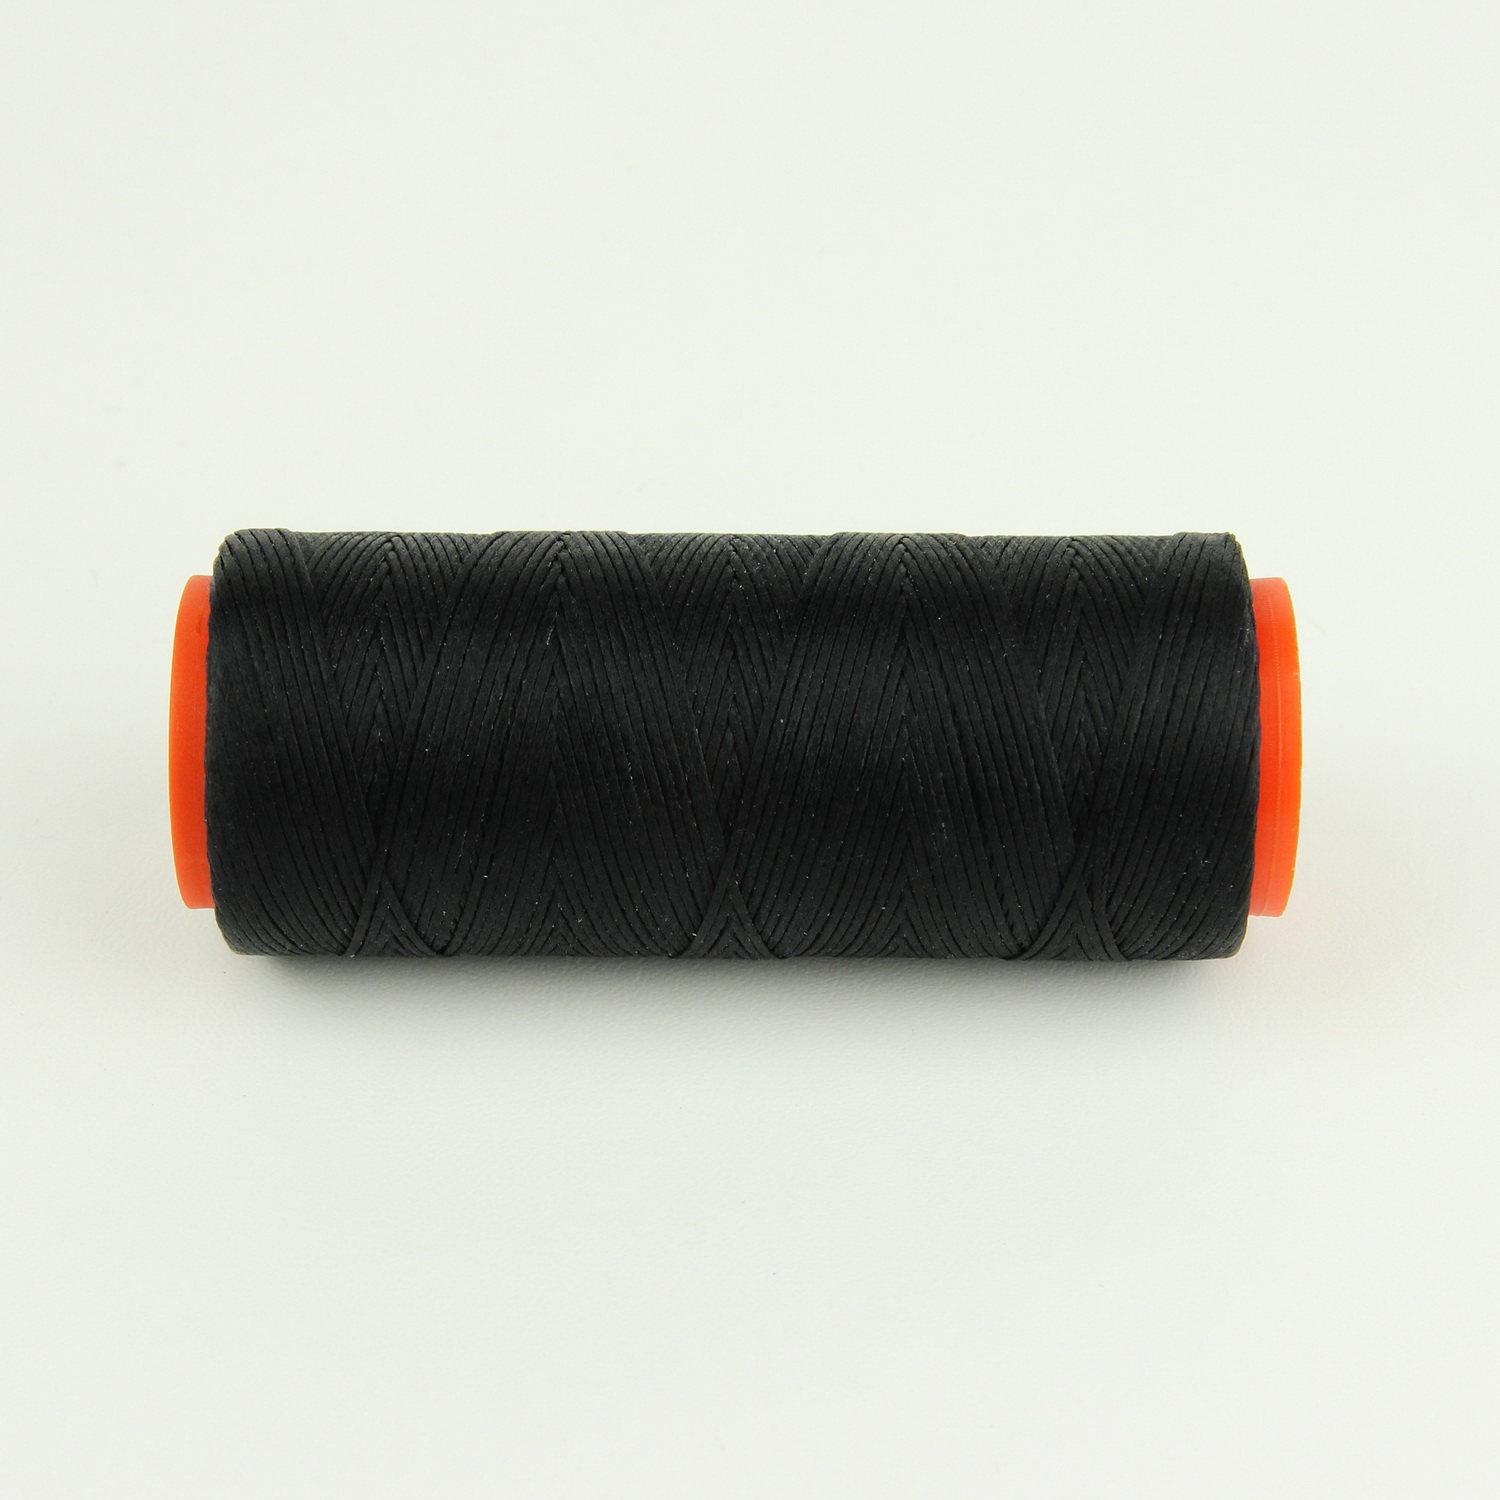 Нить для перетяжки руля вощеная (цвет черный 901), толщина 0.8 мм, длина 100 метров "Турция" детальная фотка